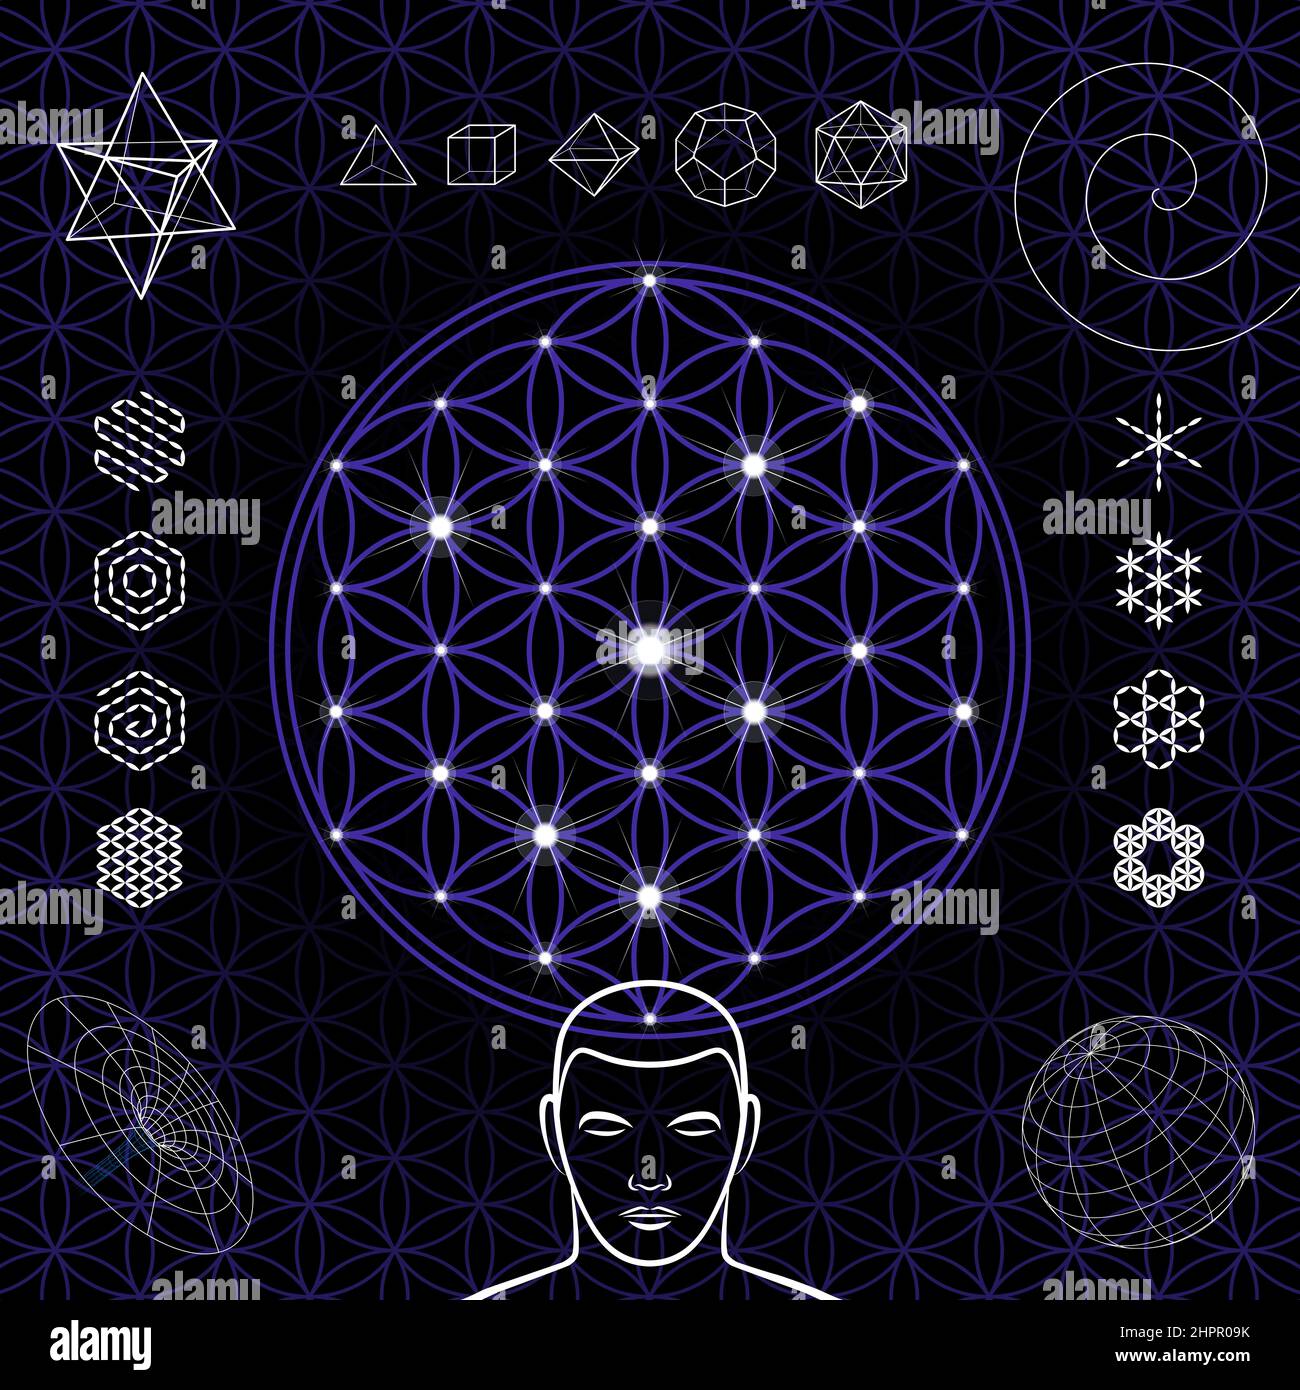 Blume des Lebens, mit Sternen und Symbolen. Überlappende Kreise bilden ein blumenähnliches Muster. Geometrische Figuren und mystische Muster. Stockfoto